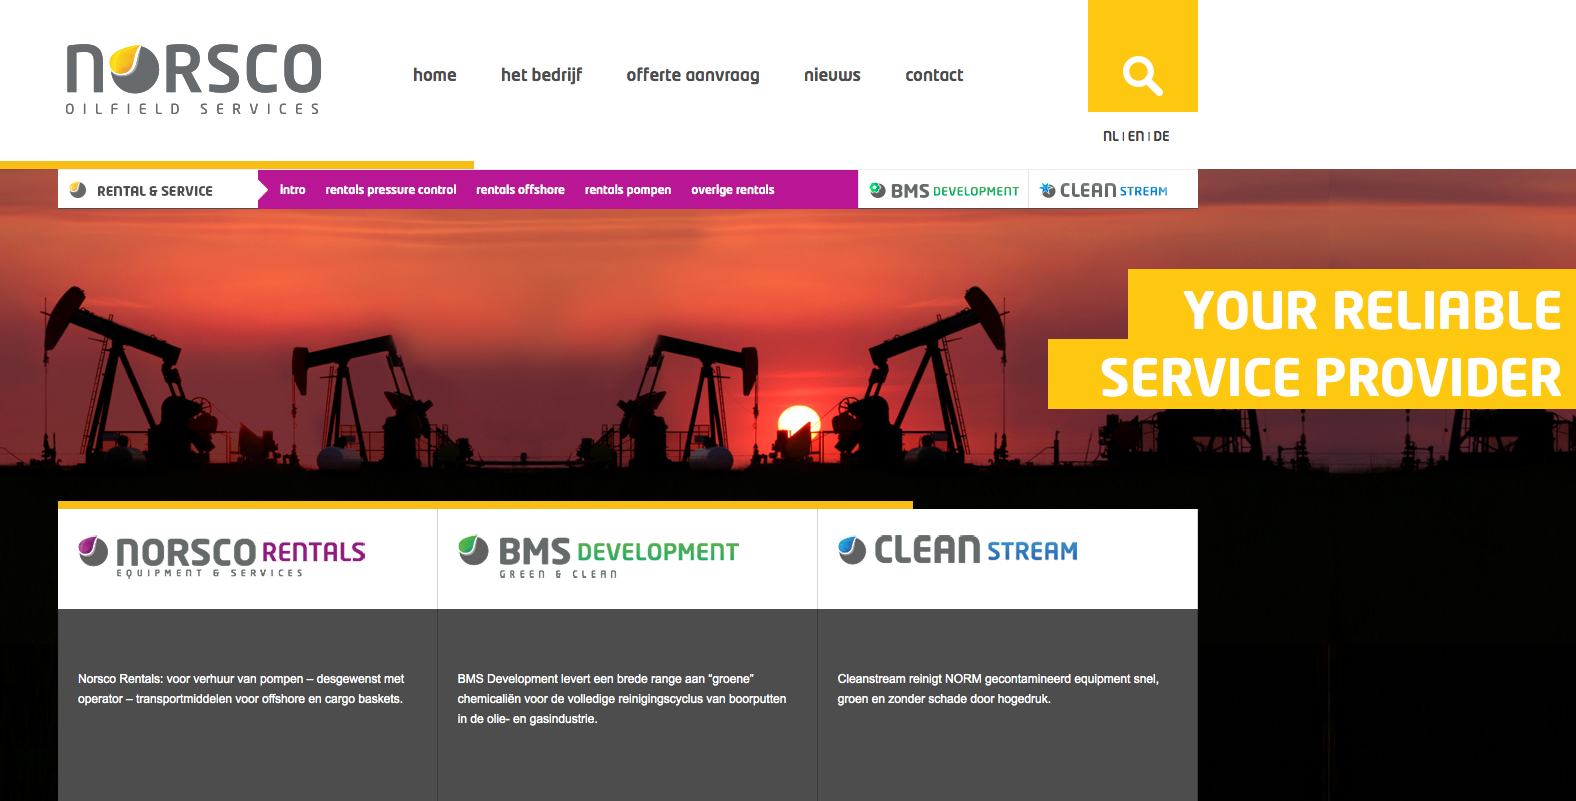 Foto van de homepage van de webportal van Norsco Oilfield Services in Ter Apel, leverancier en dienstverlener voor de onshore en offshore olie- en gasindustrie. 